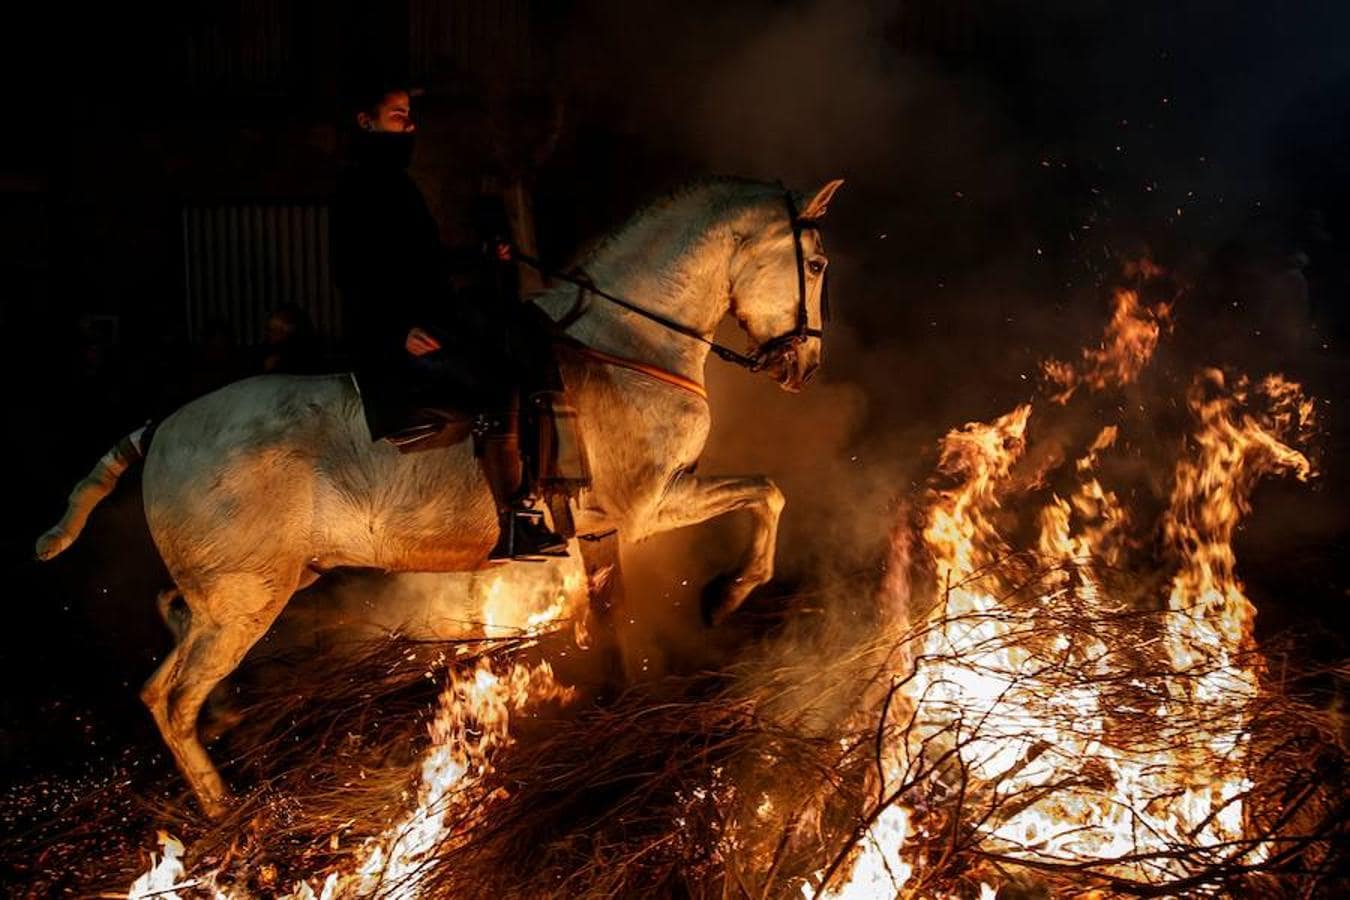 Varios jinetes salta sobre una hoguera en el pueblo de San Bartolomé de Pinares en la provincia de Ávila durante la inauguración de la tradicional fiesta religiosa 'Luminarias' en honor a San Antonio Abad.